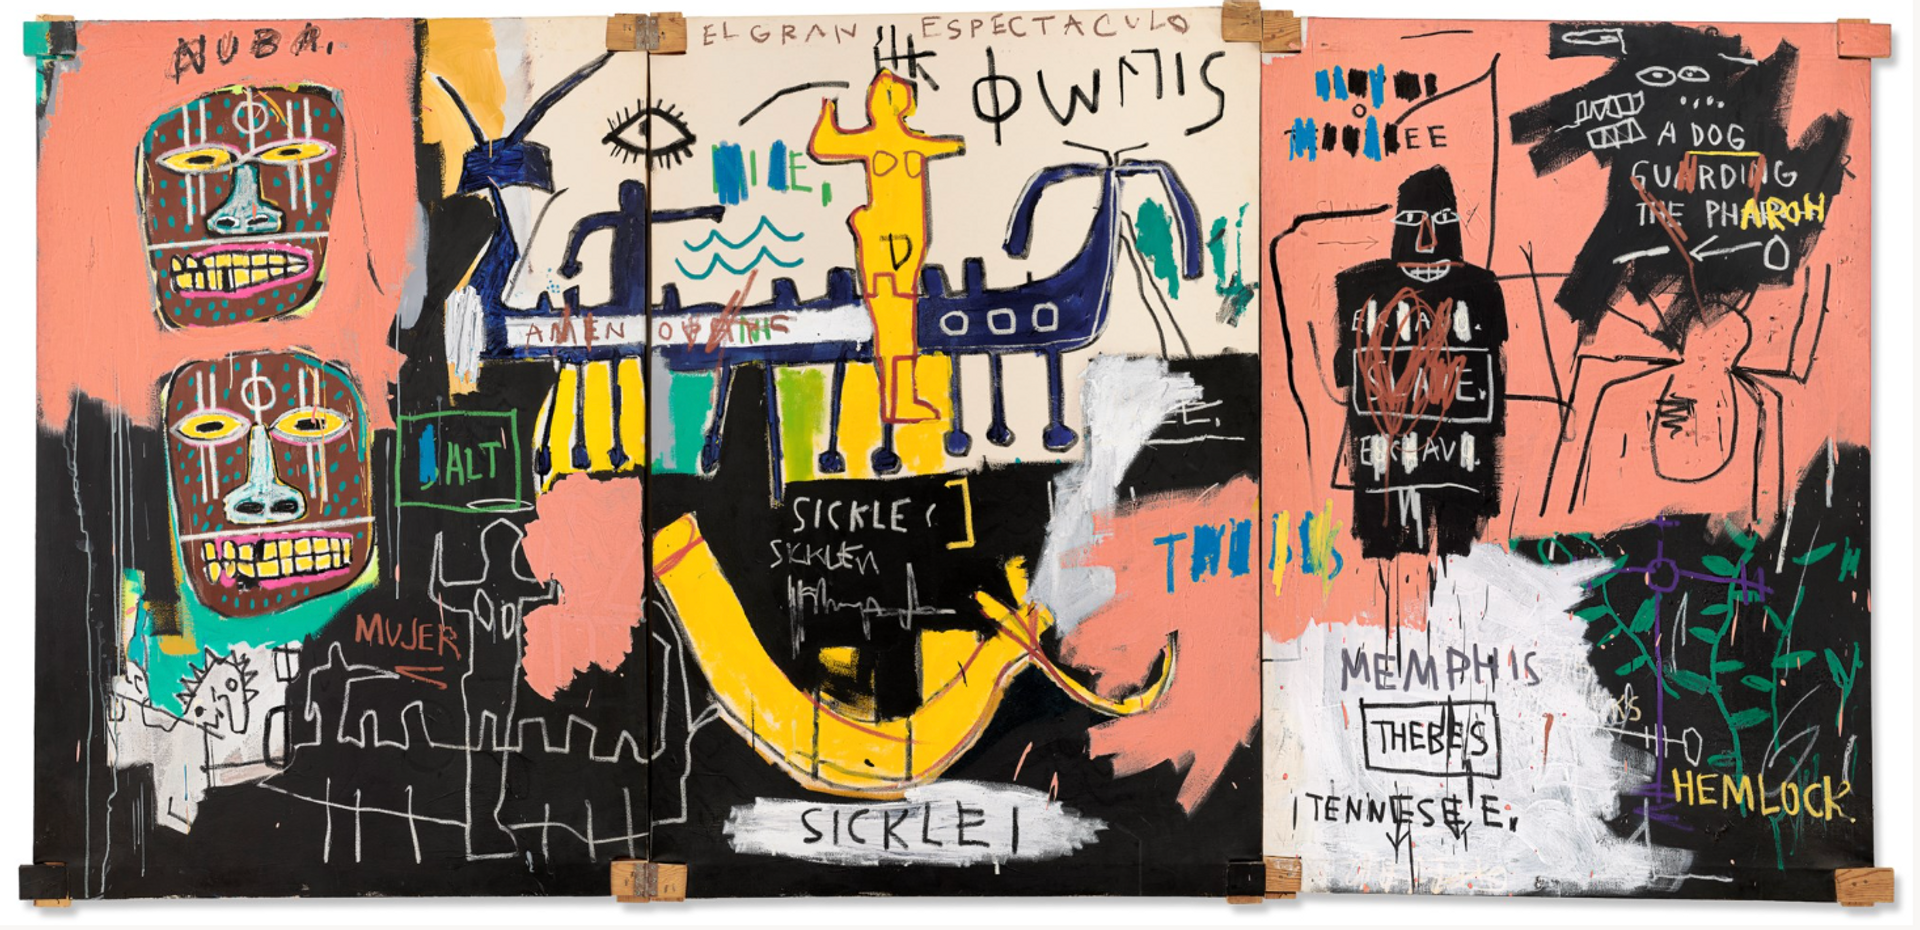 El Gran Espectaculo (The Nile) by Jean-Michel Basquiat - Christie's 2023